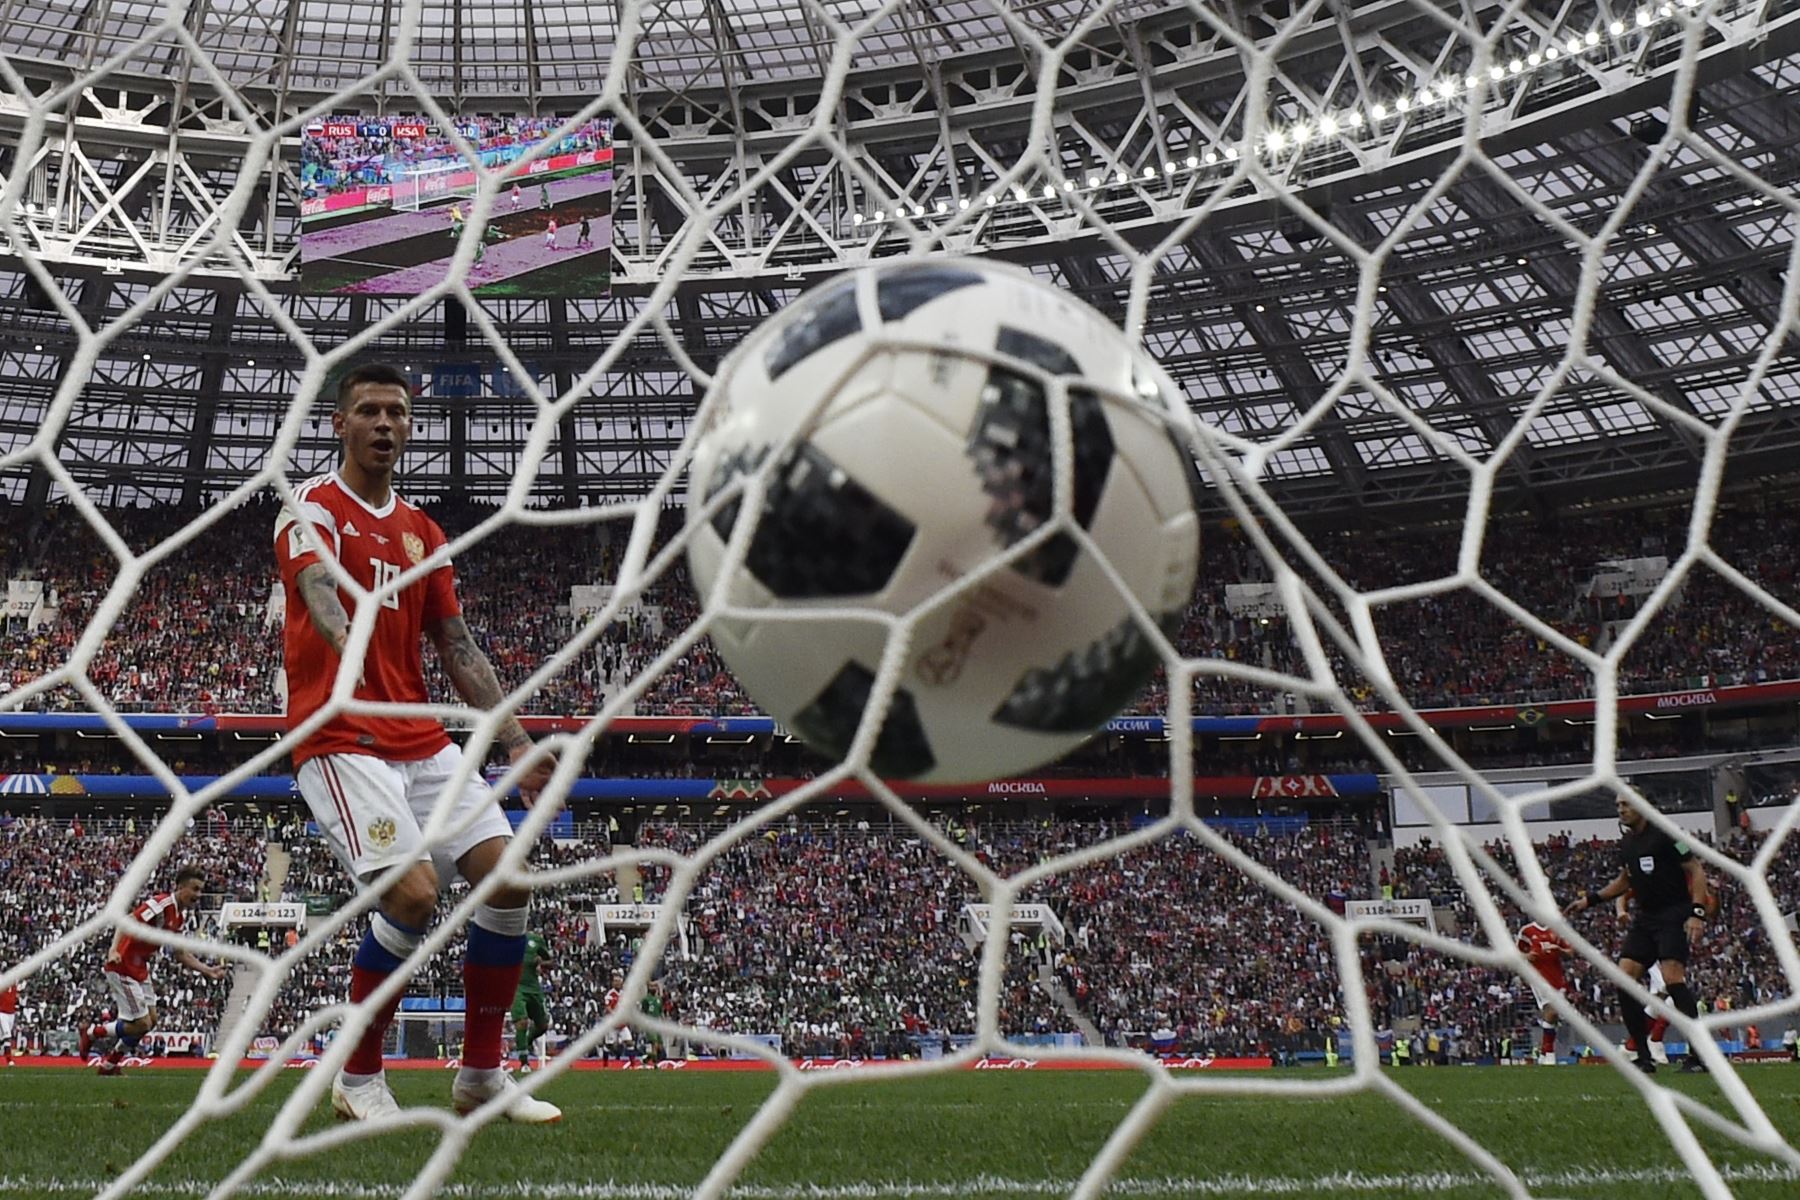 El centrocampista de Rusia Denis Cheryshev (no en la foto) marca el gol de 2-0 durante el partido de fútbol Rusia A del Grupo A de la Copa Mundial 2018 entre Rusia y Arabia Saudita en el Estadio Luzhniki de Moscú. Foto: AFP